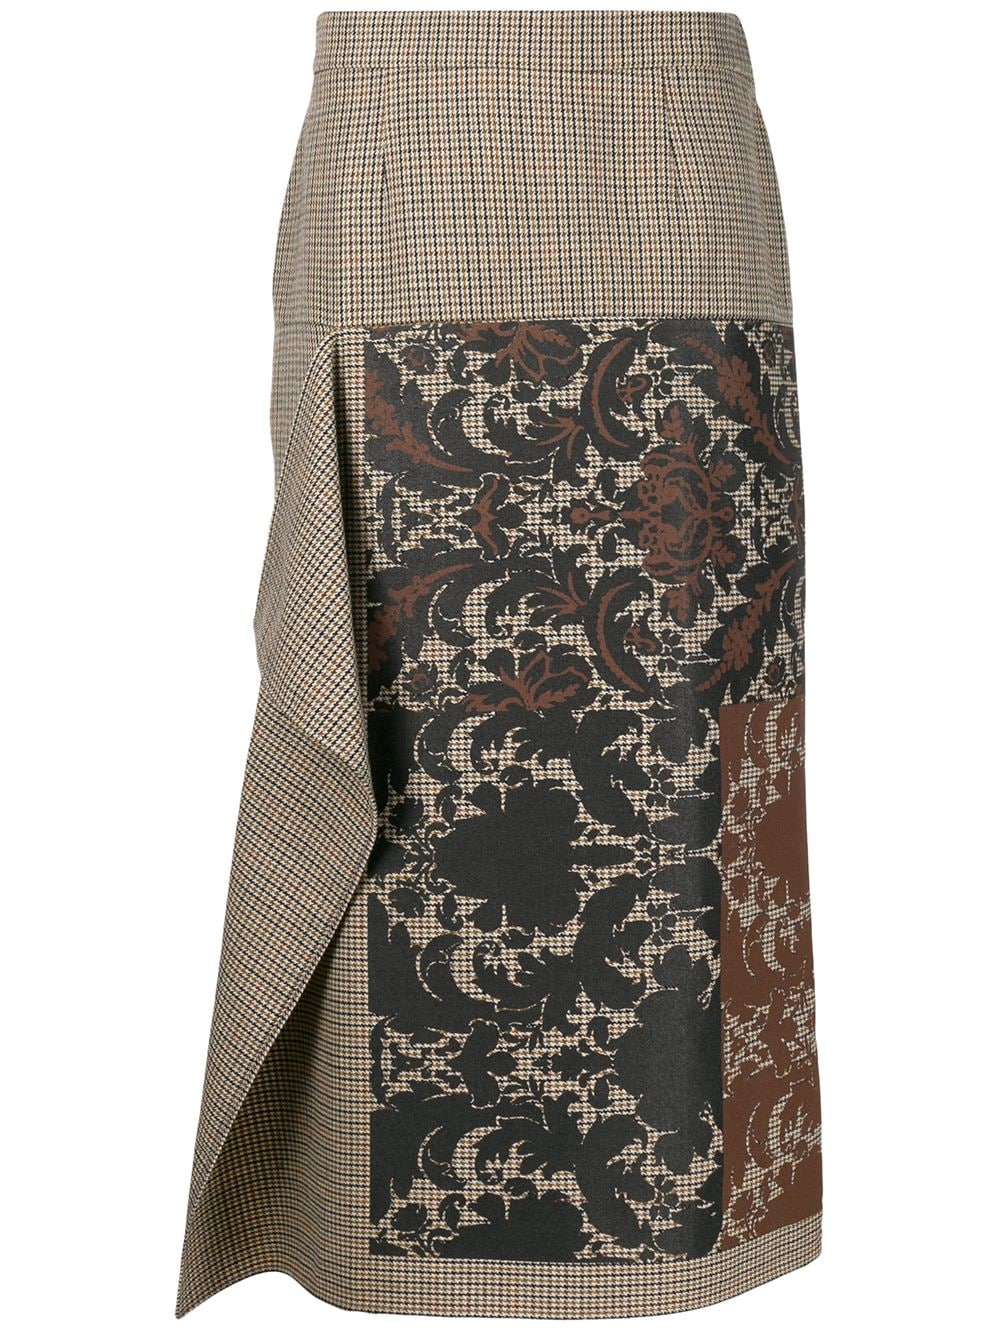 фото Ports 1961 юбка асимметричного кроя с принтом baroque